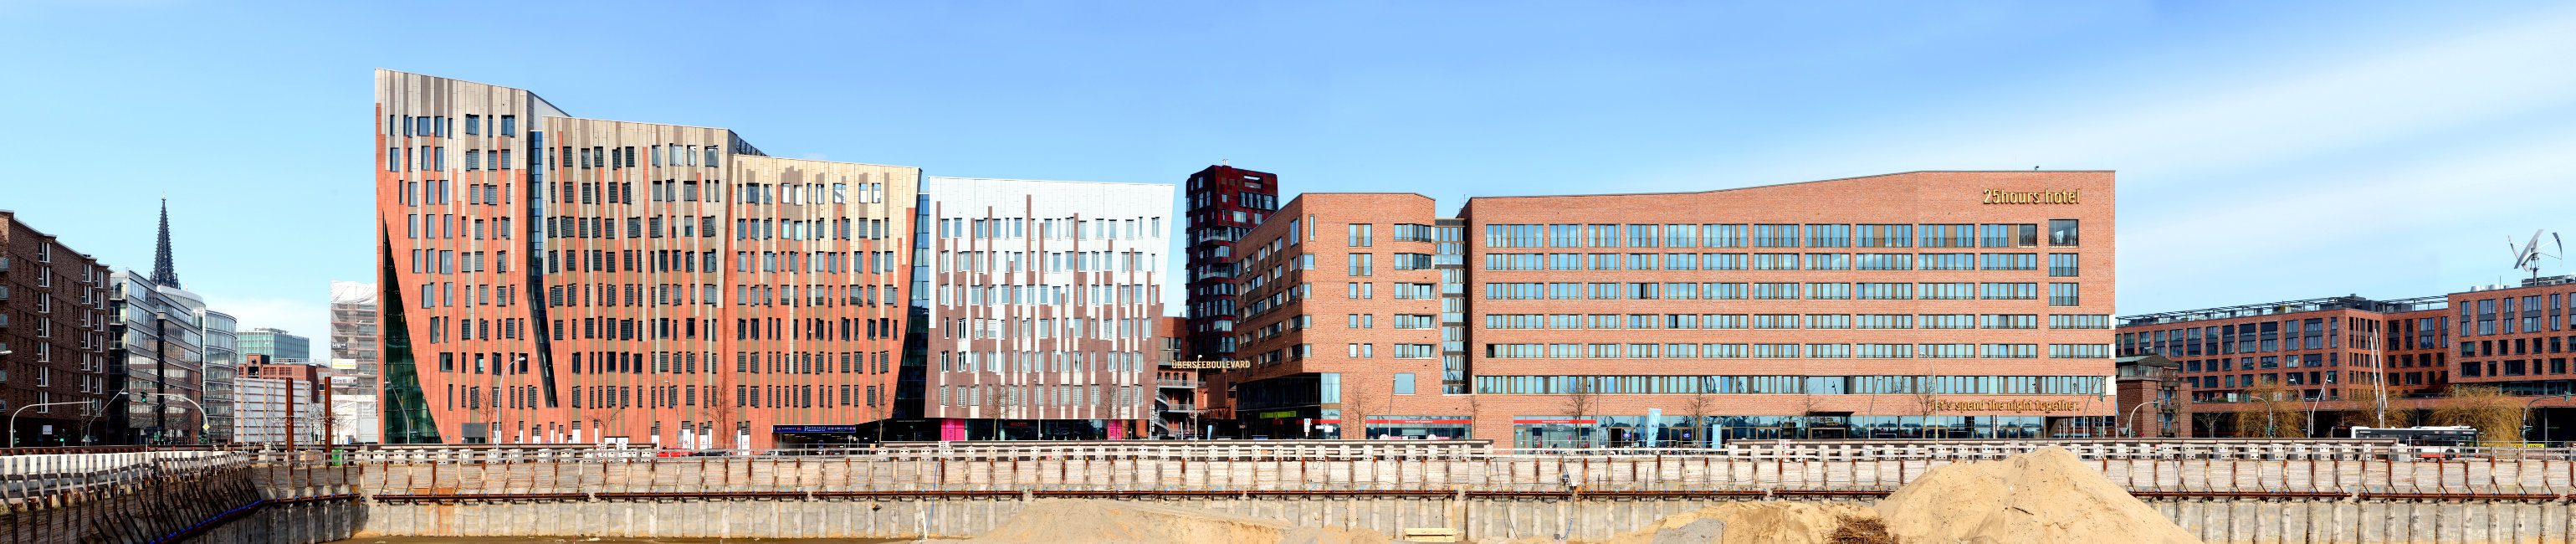 Hafen-City Panorama moderne Architektur